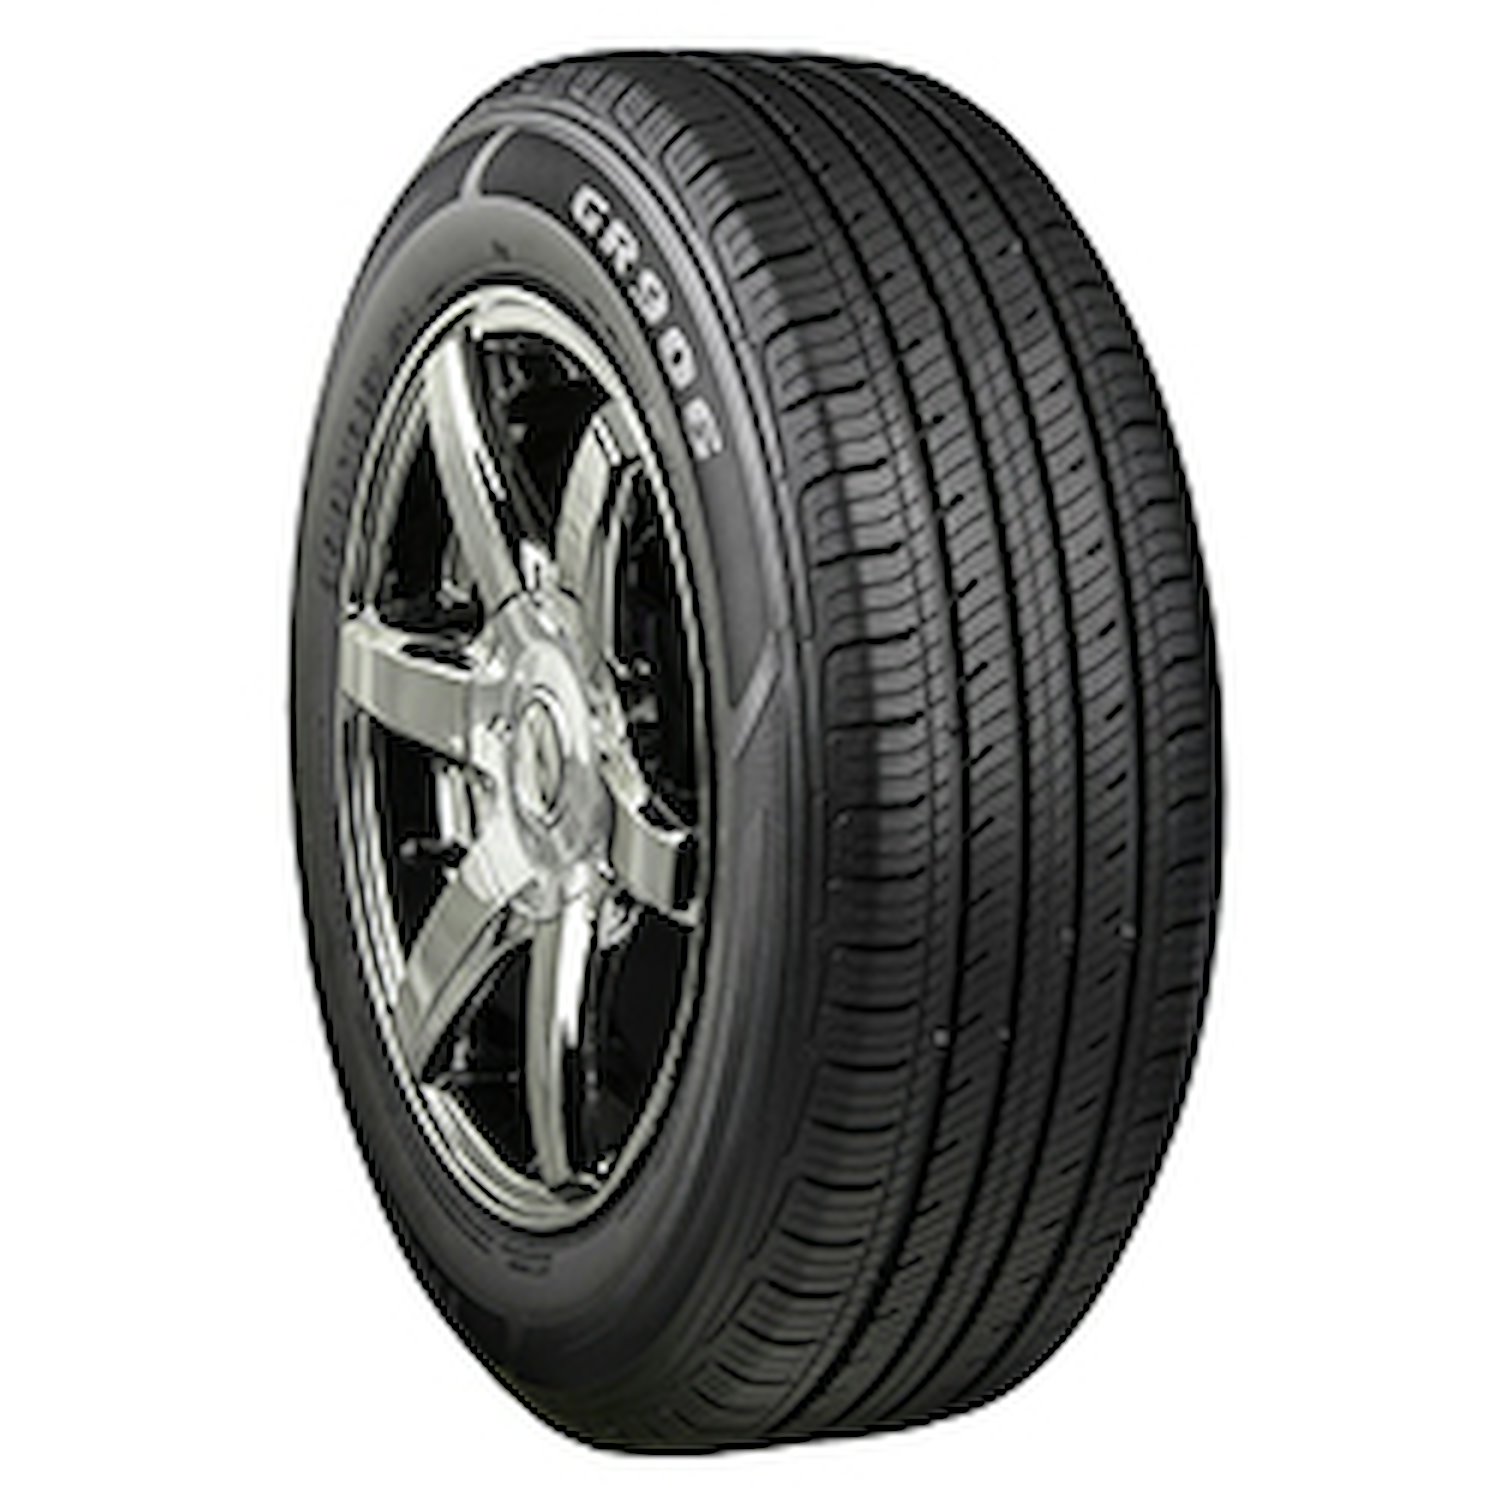 GR906 Tire, 175/70R13 82T